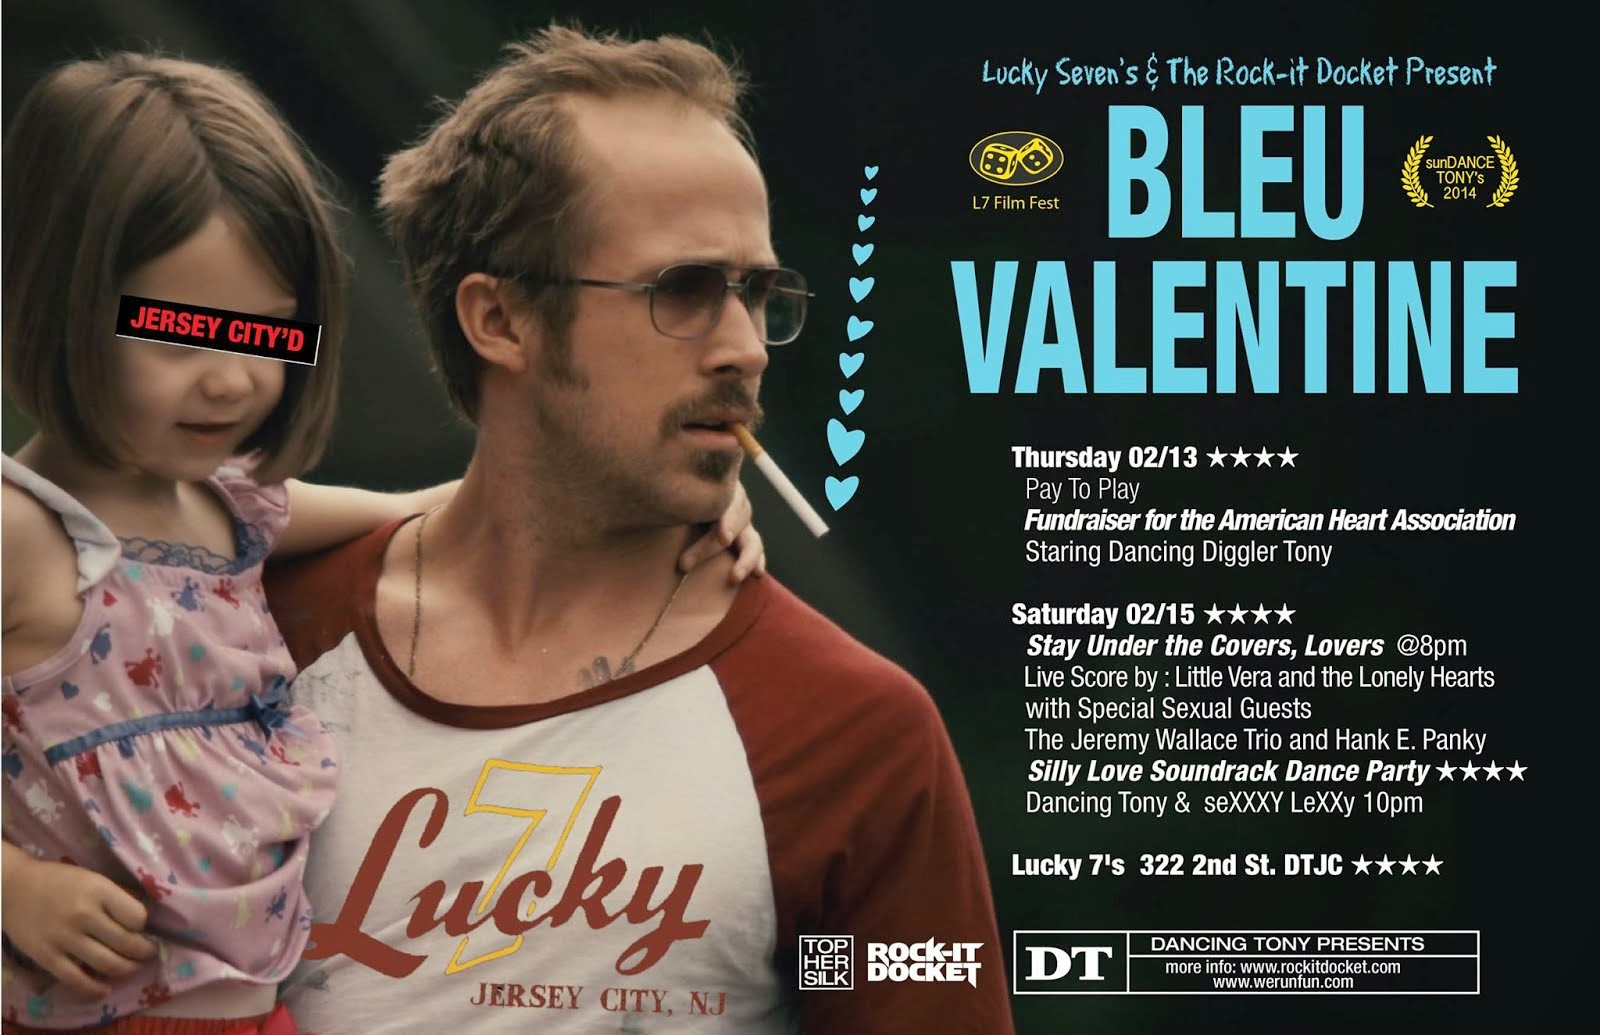 Bleu Valentine Weekend at Lucky 7's